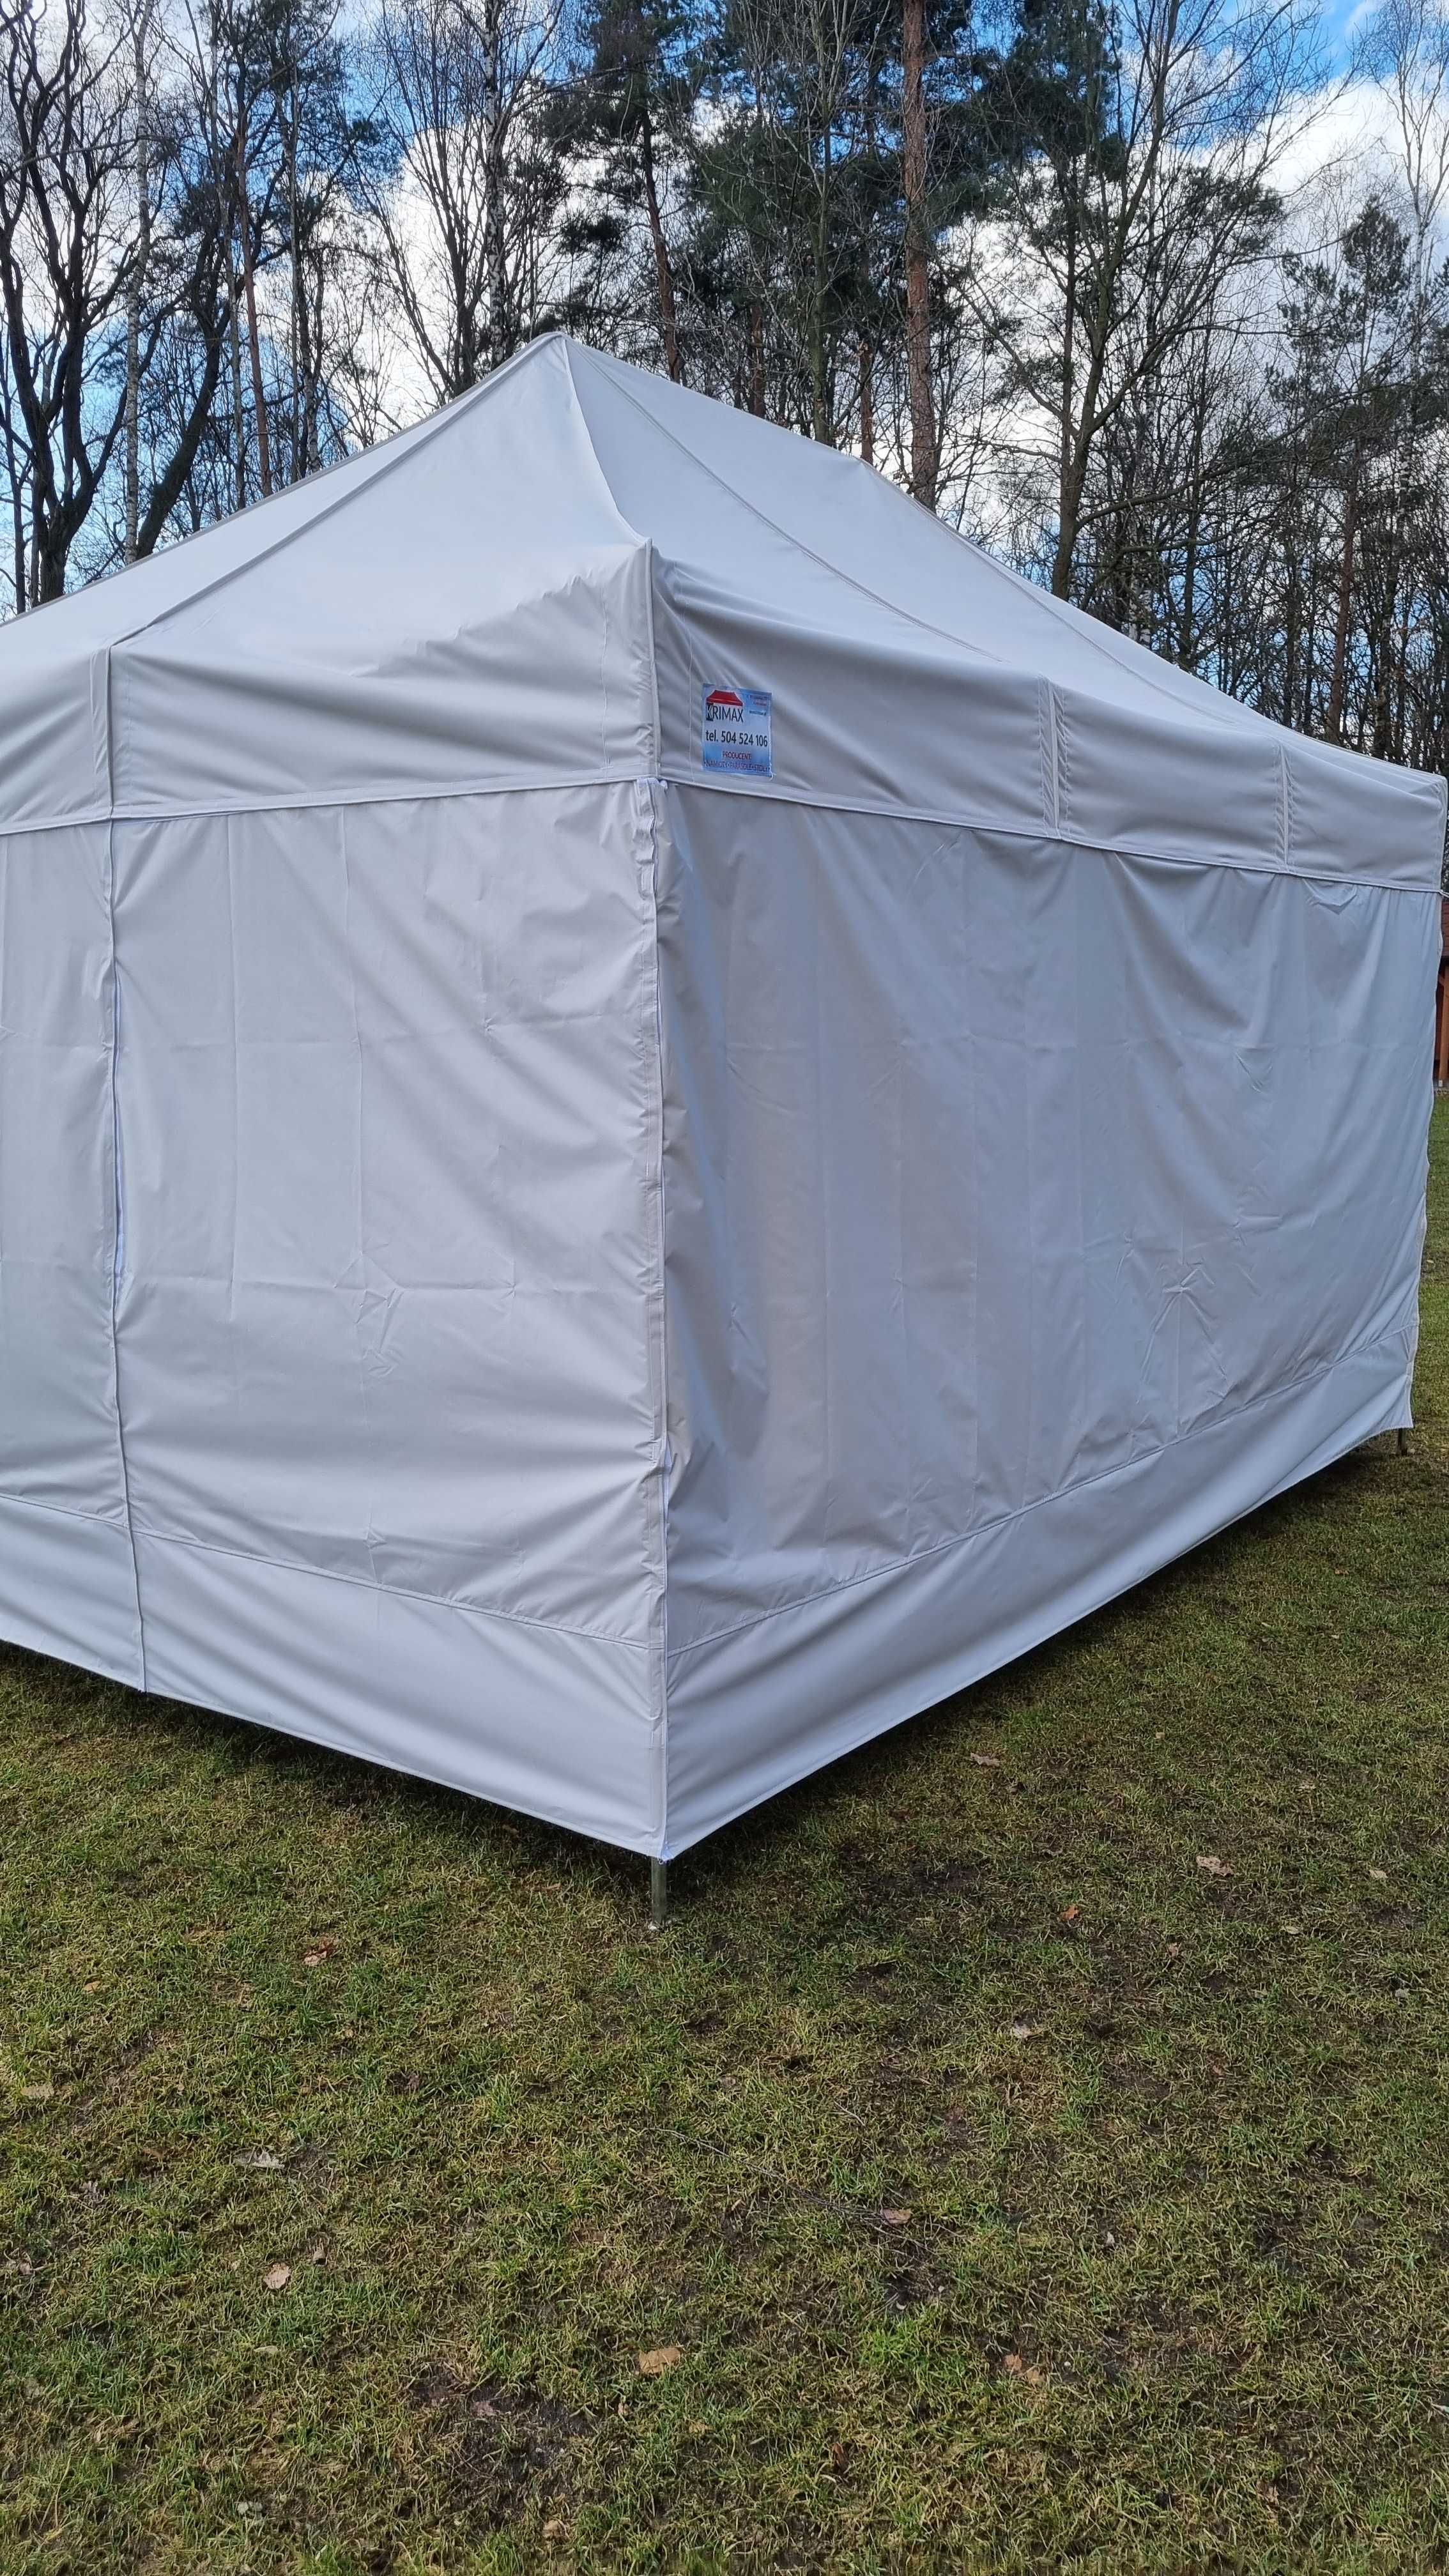 Namiot spawalniczy 2x2 (stal) namiot roboczy, zgrzewanie rur. ATEST